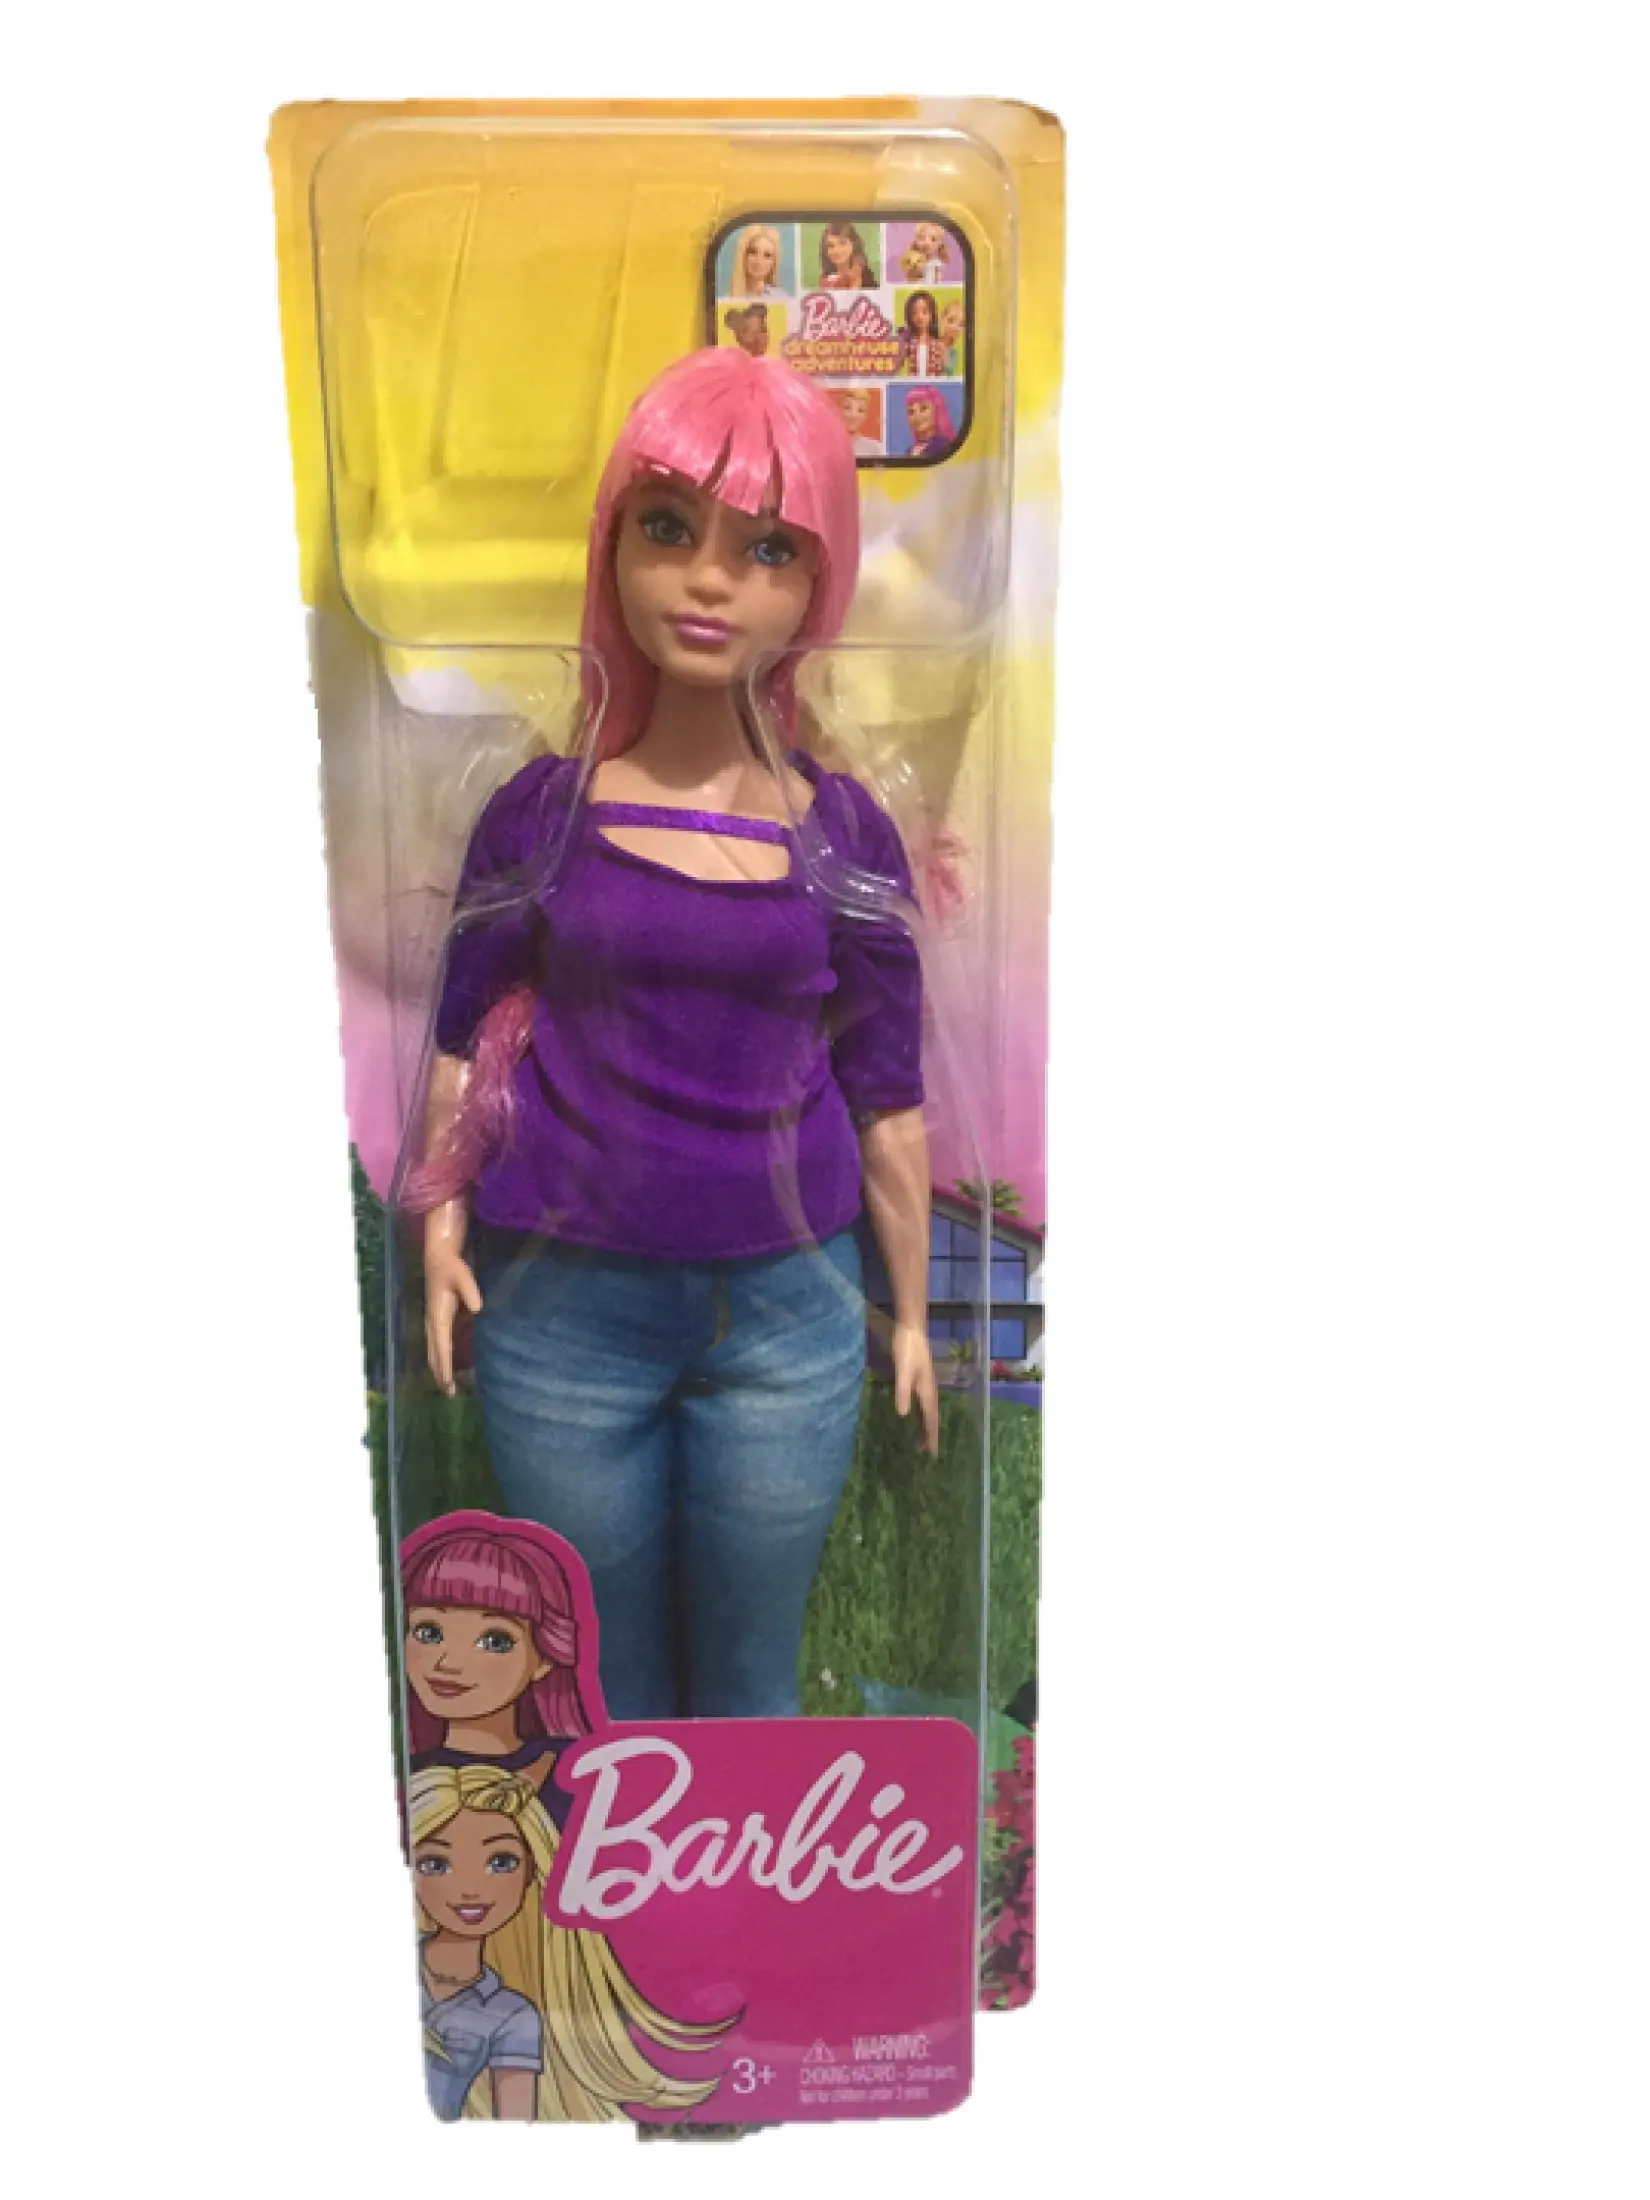 Barbie DREAMHOUSE Adventures Daisy CURVY Doll with Travel